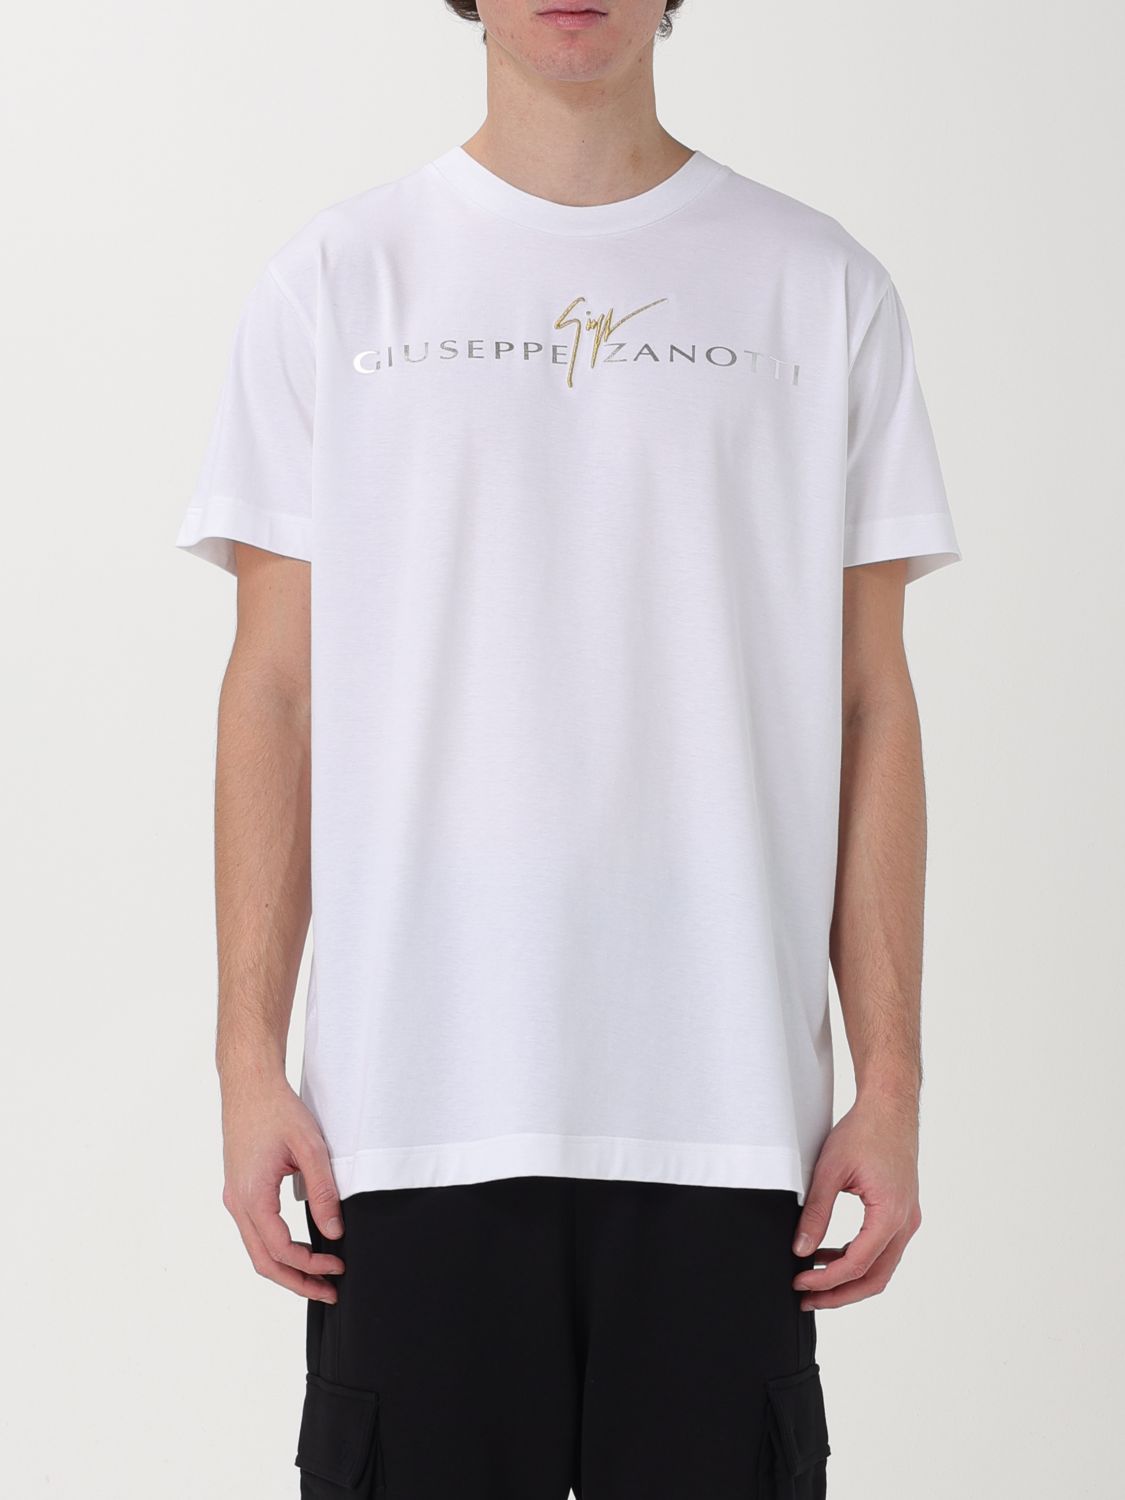 Giuseppe Zanotti T-Shirt GIUSEPPE ZANOTTI Men colour White